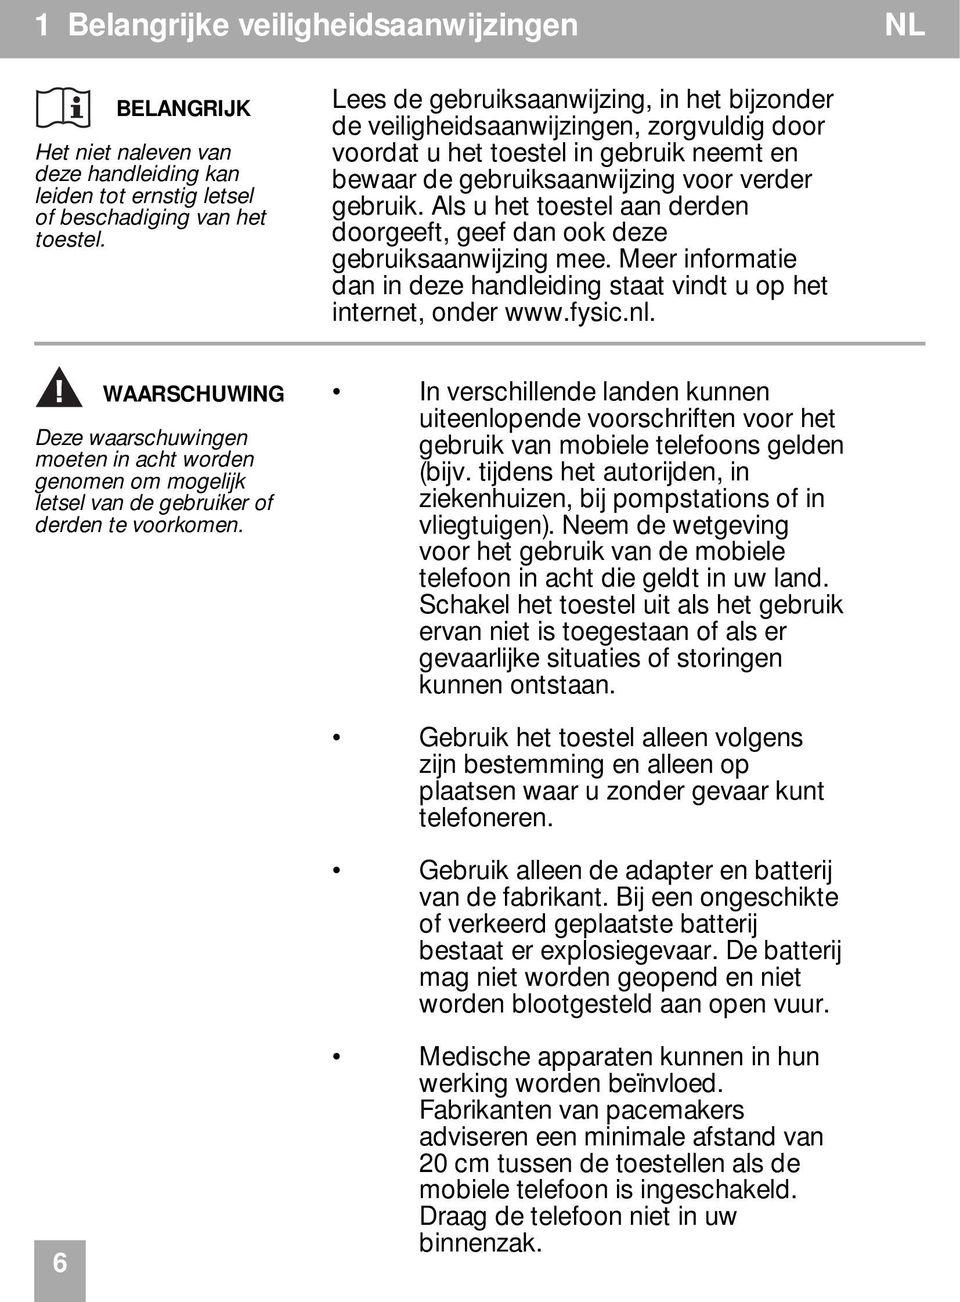 Als u het toestel aan derden doorgeeft, geef dan ook deze gebruiksaanwijzing mee. Meer informatie dan in deze handleiding staat vindt u op het internet, onder www.fysic.nl.